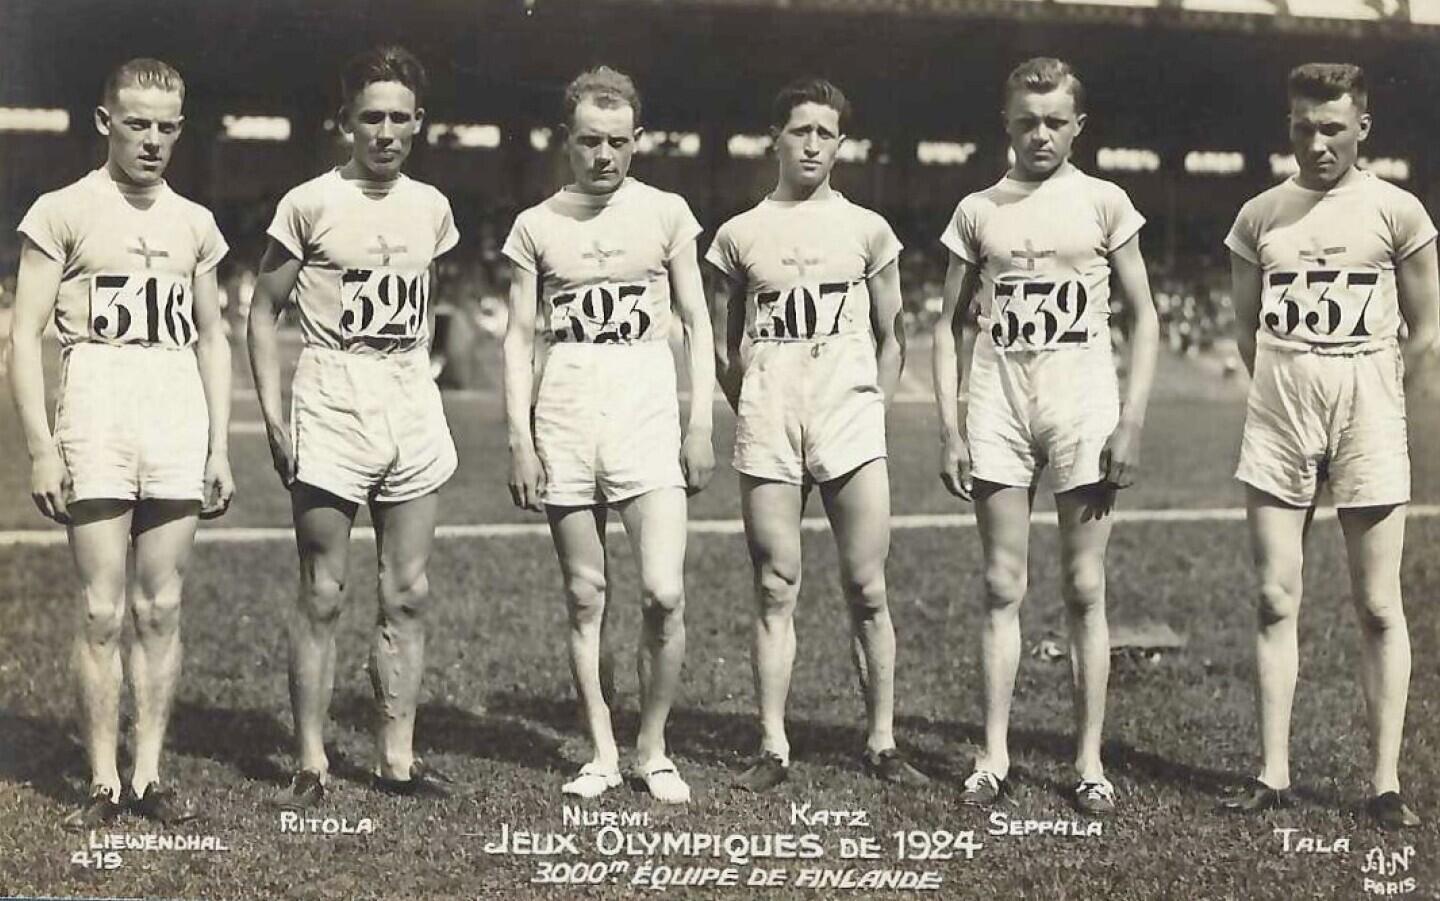 Mitglieder der finnischen Leichtathletikmannschaft bei den Olympischen Spielen 1924, darunter Ville Ritola und Paavo Nurmi.